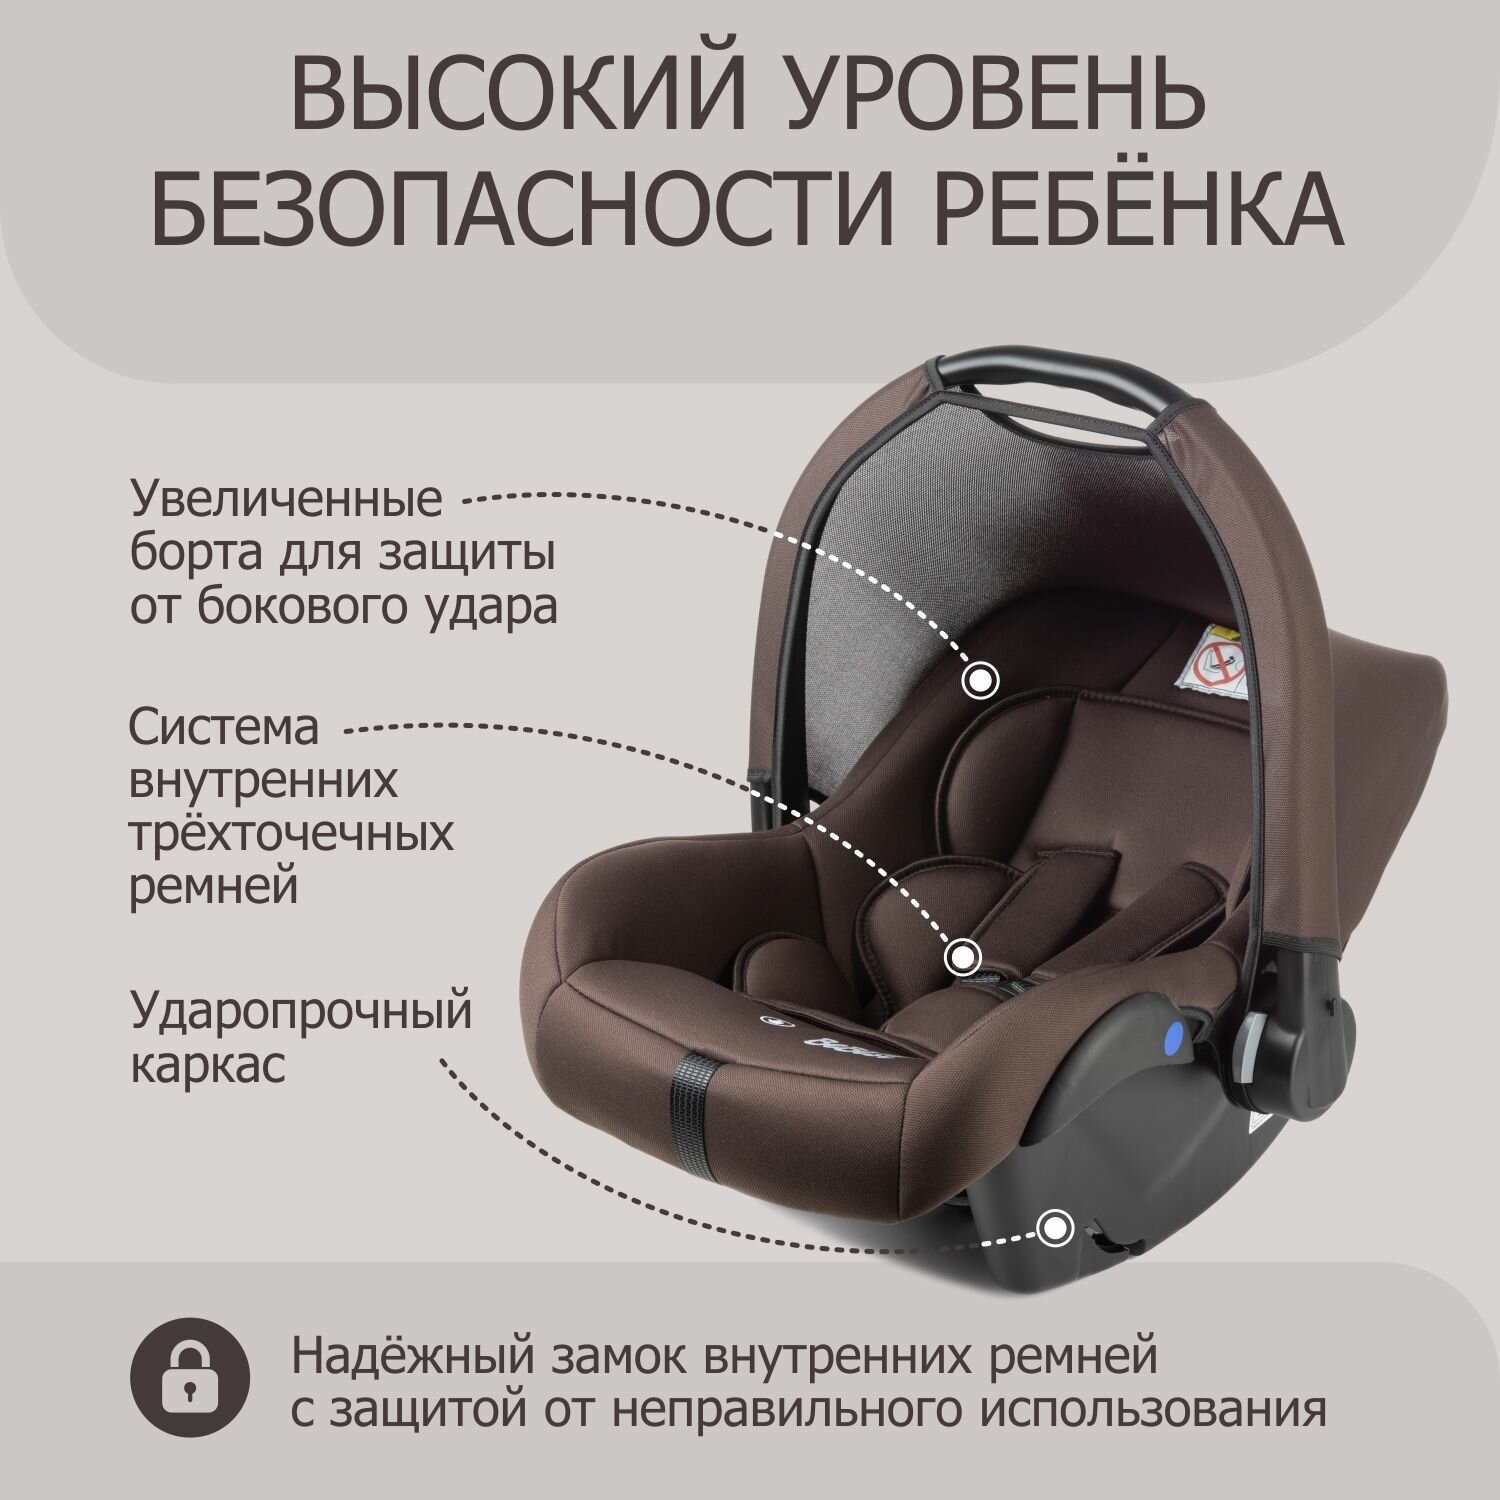 Автокресло детское, автолюлька для новорожденных Cleo LUX от 0 до 13 кг, brown